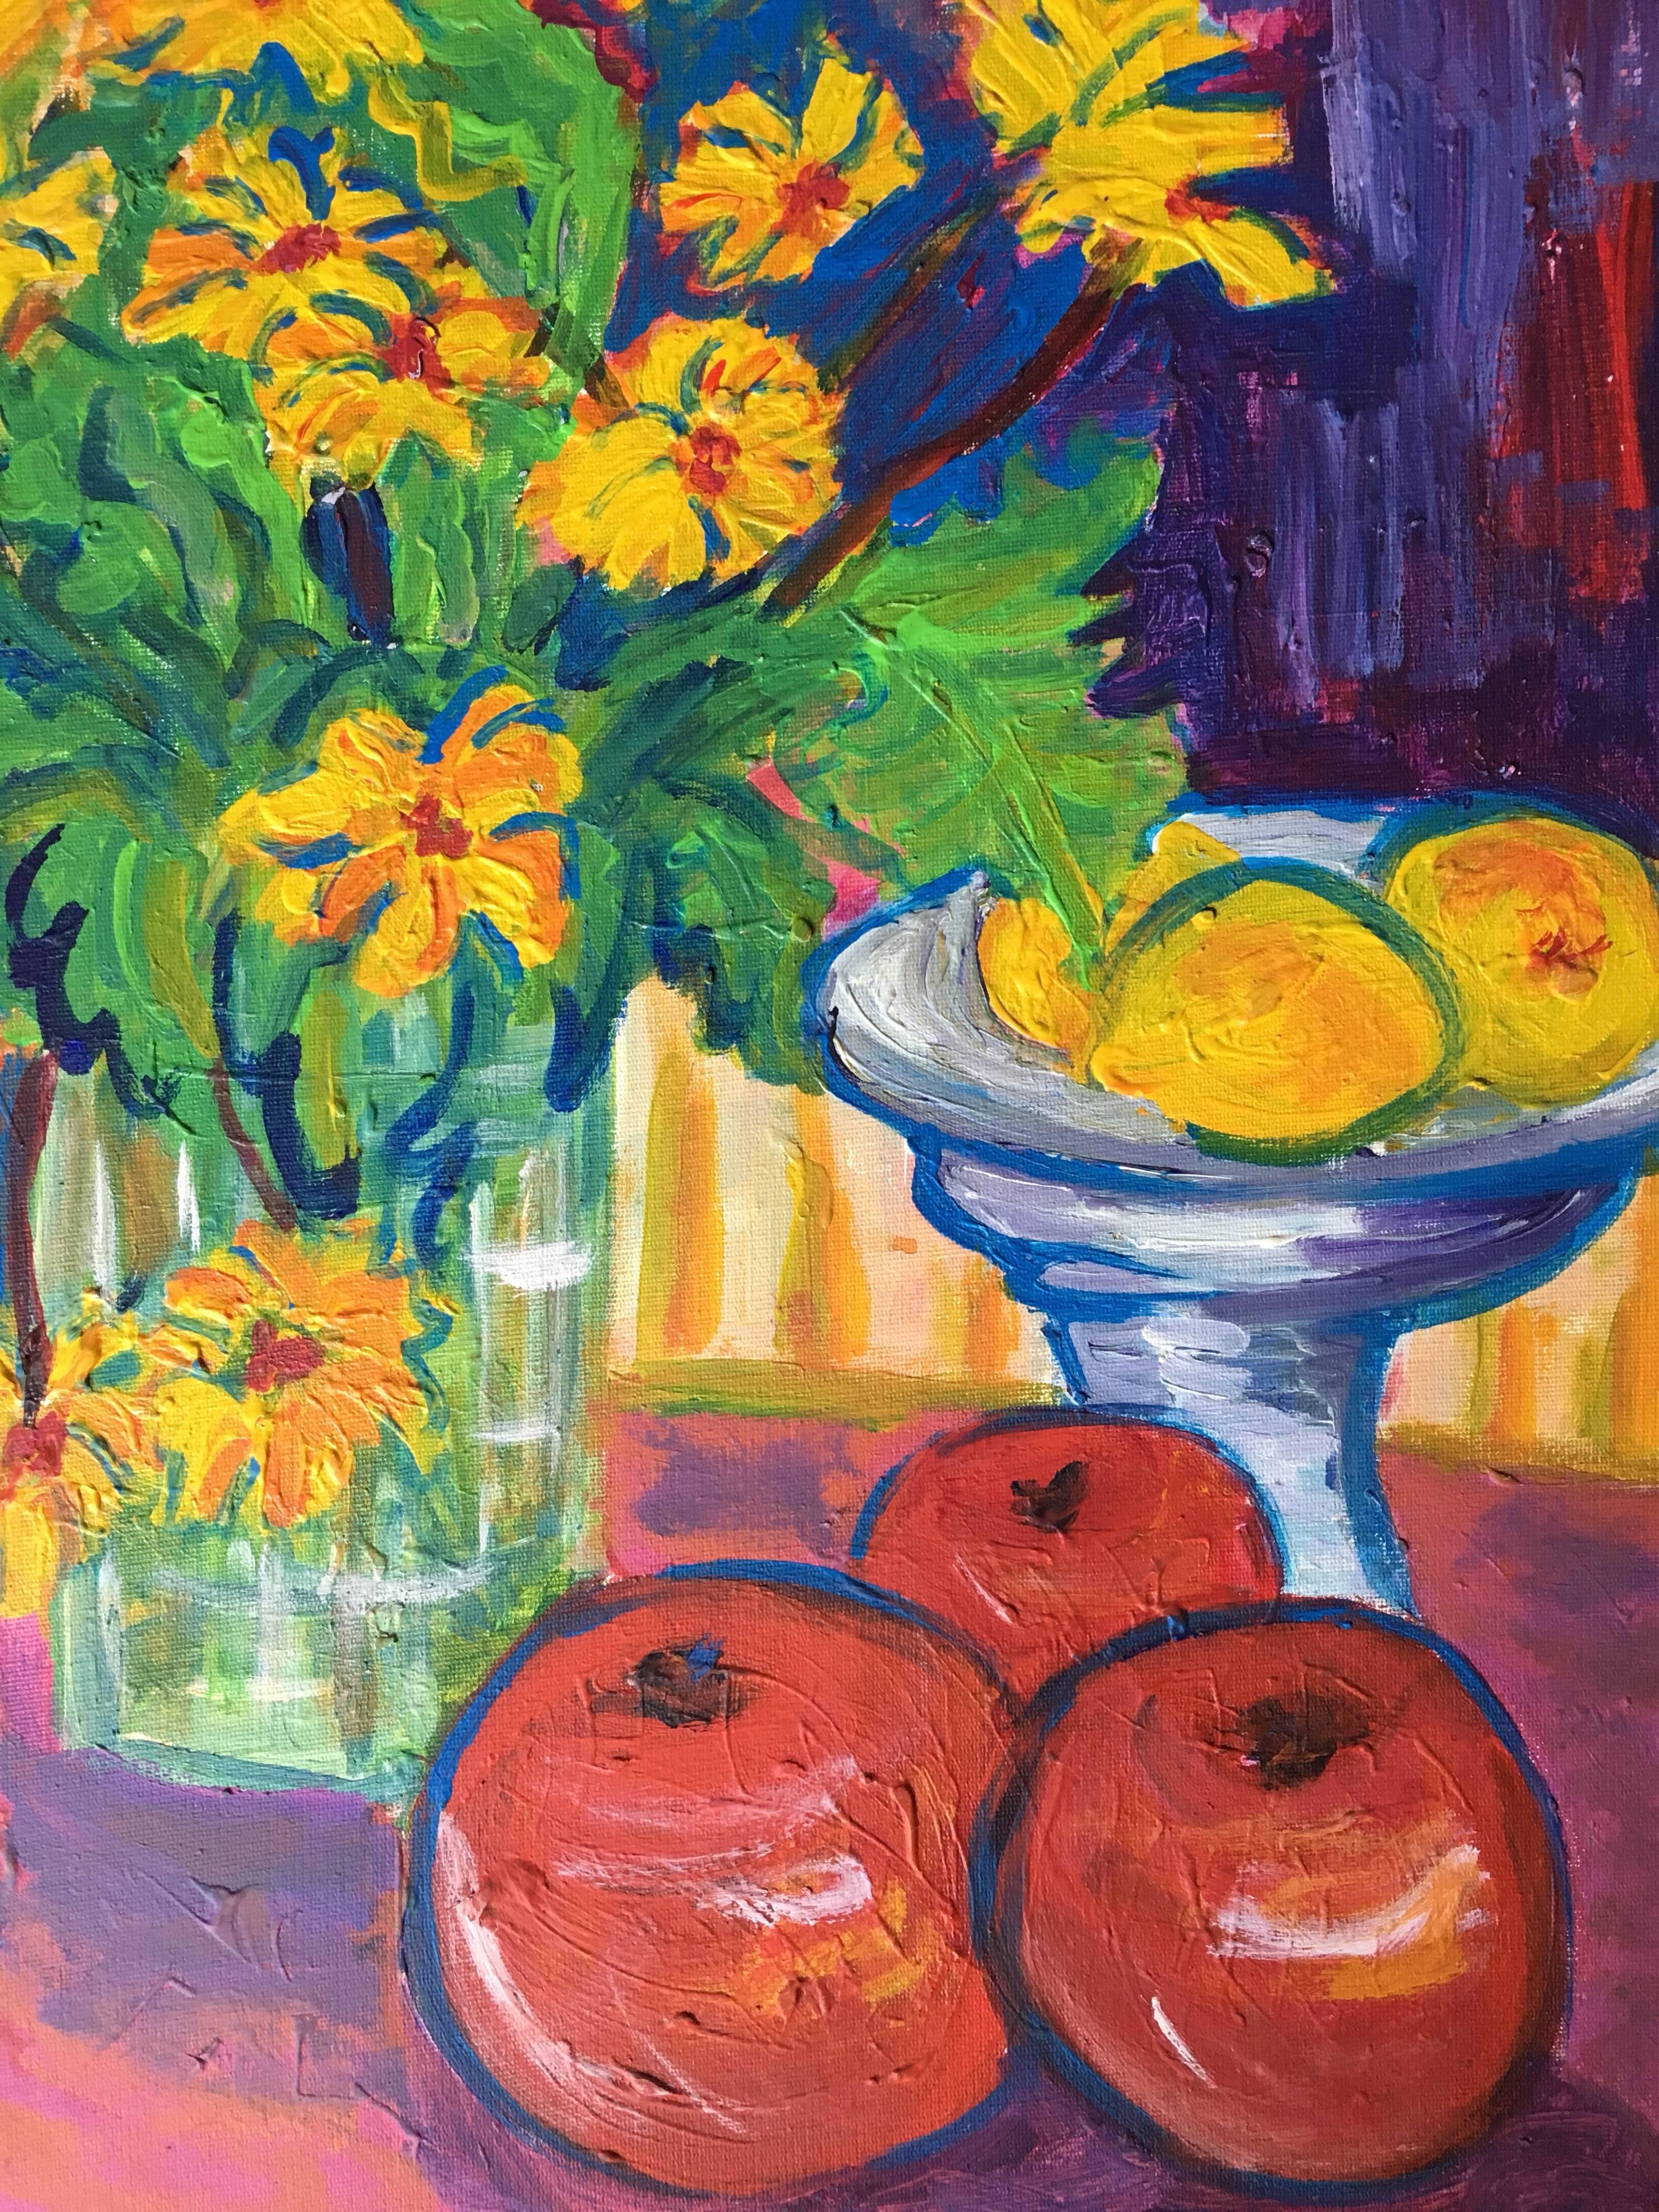 Impressionistisches Ölgemälde mit Gänseblümchen, Zitronen und Äpfeln
von Pamela Cawley, Britin, 20. Jahrhundert
ölgemälde auf Karton, ungerahmt
brett: 20 x 16 Zoll 

Beeindruckendes originales impressionistisches Ölgemälde der britischen Künstlerin